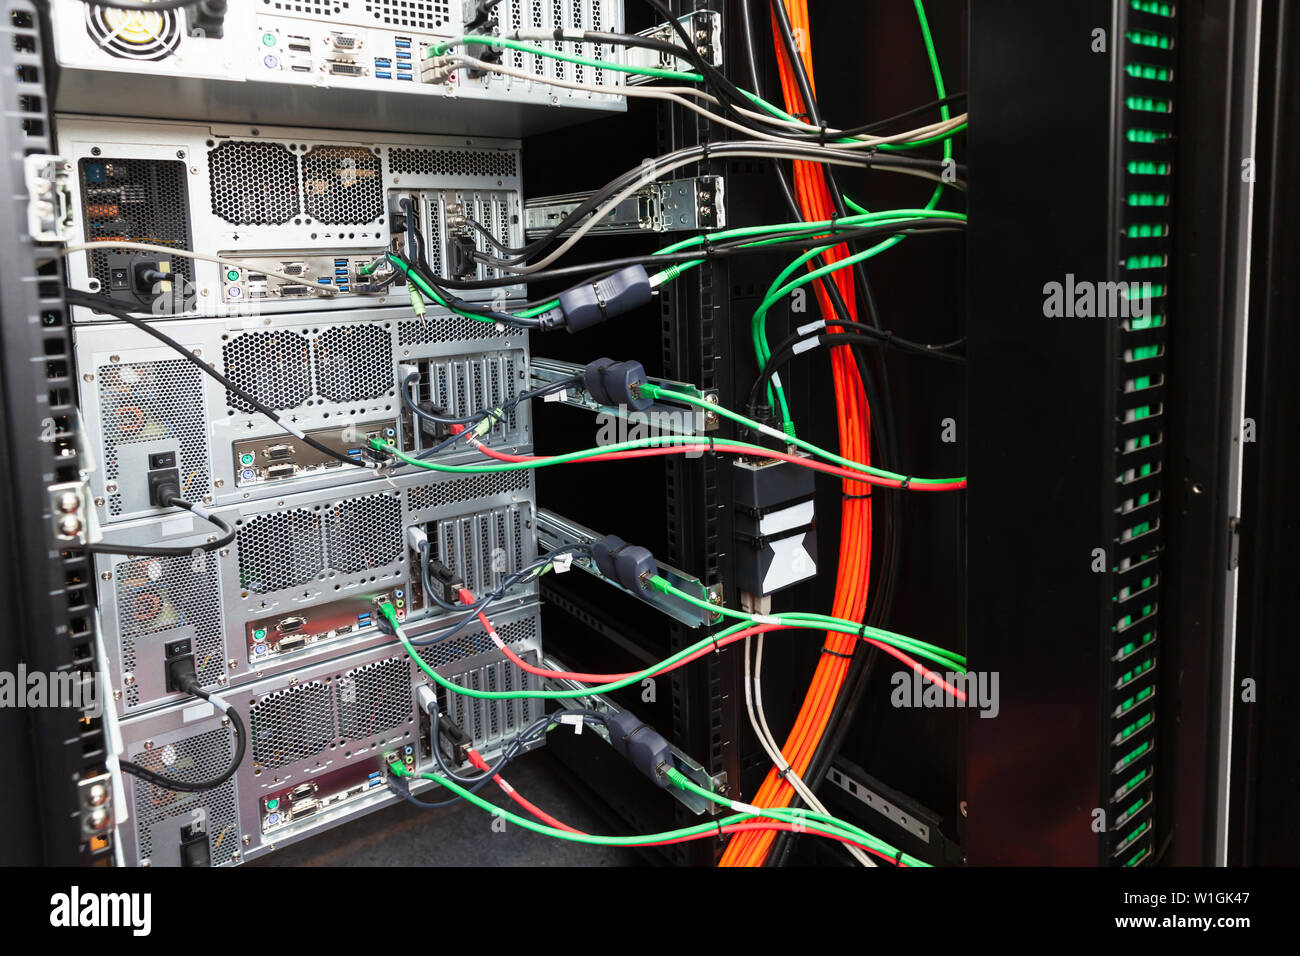 L'arrière d'un petit rack de serveurs avec postes informatiques, équipements réseau et le câble de données Banque D'Images